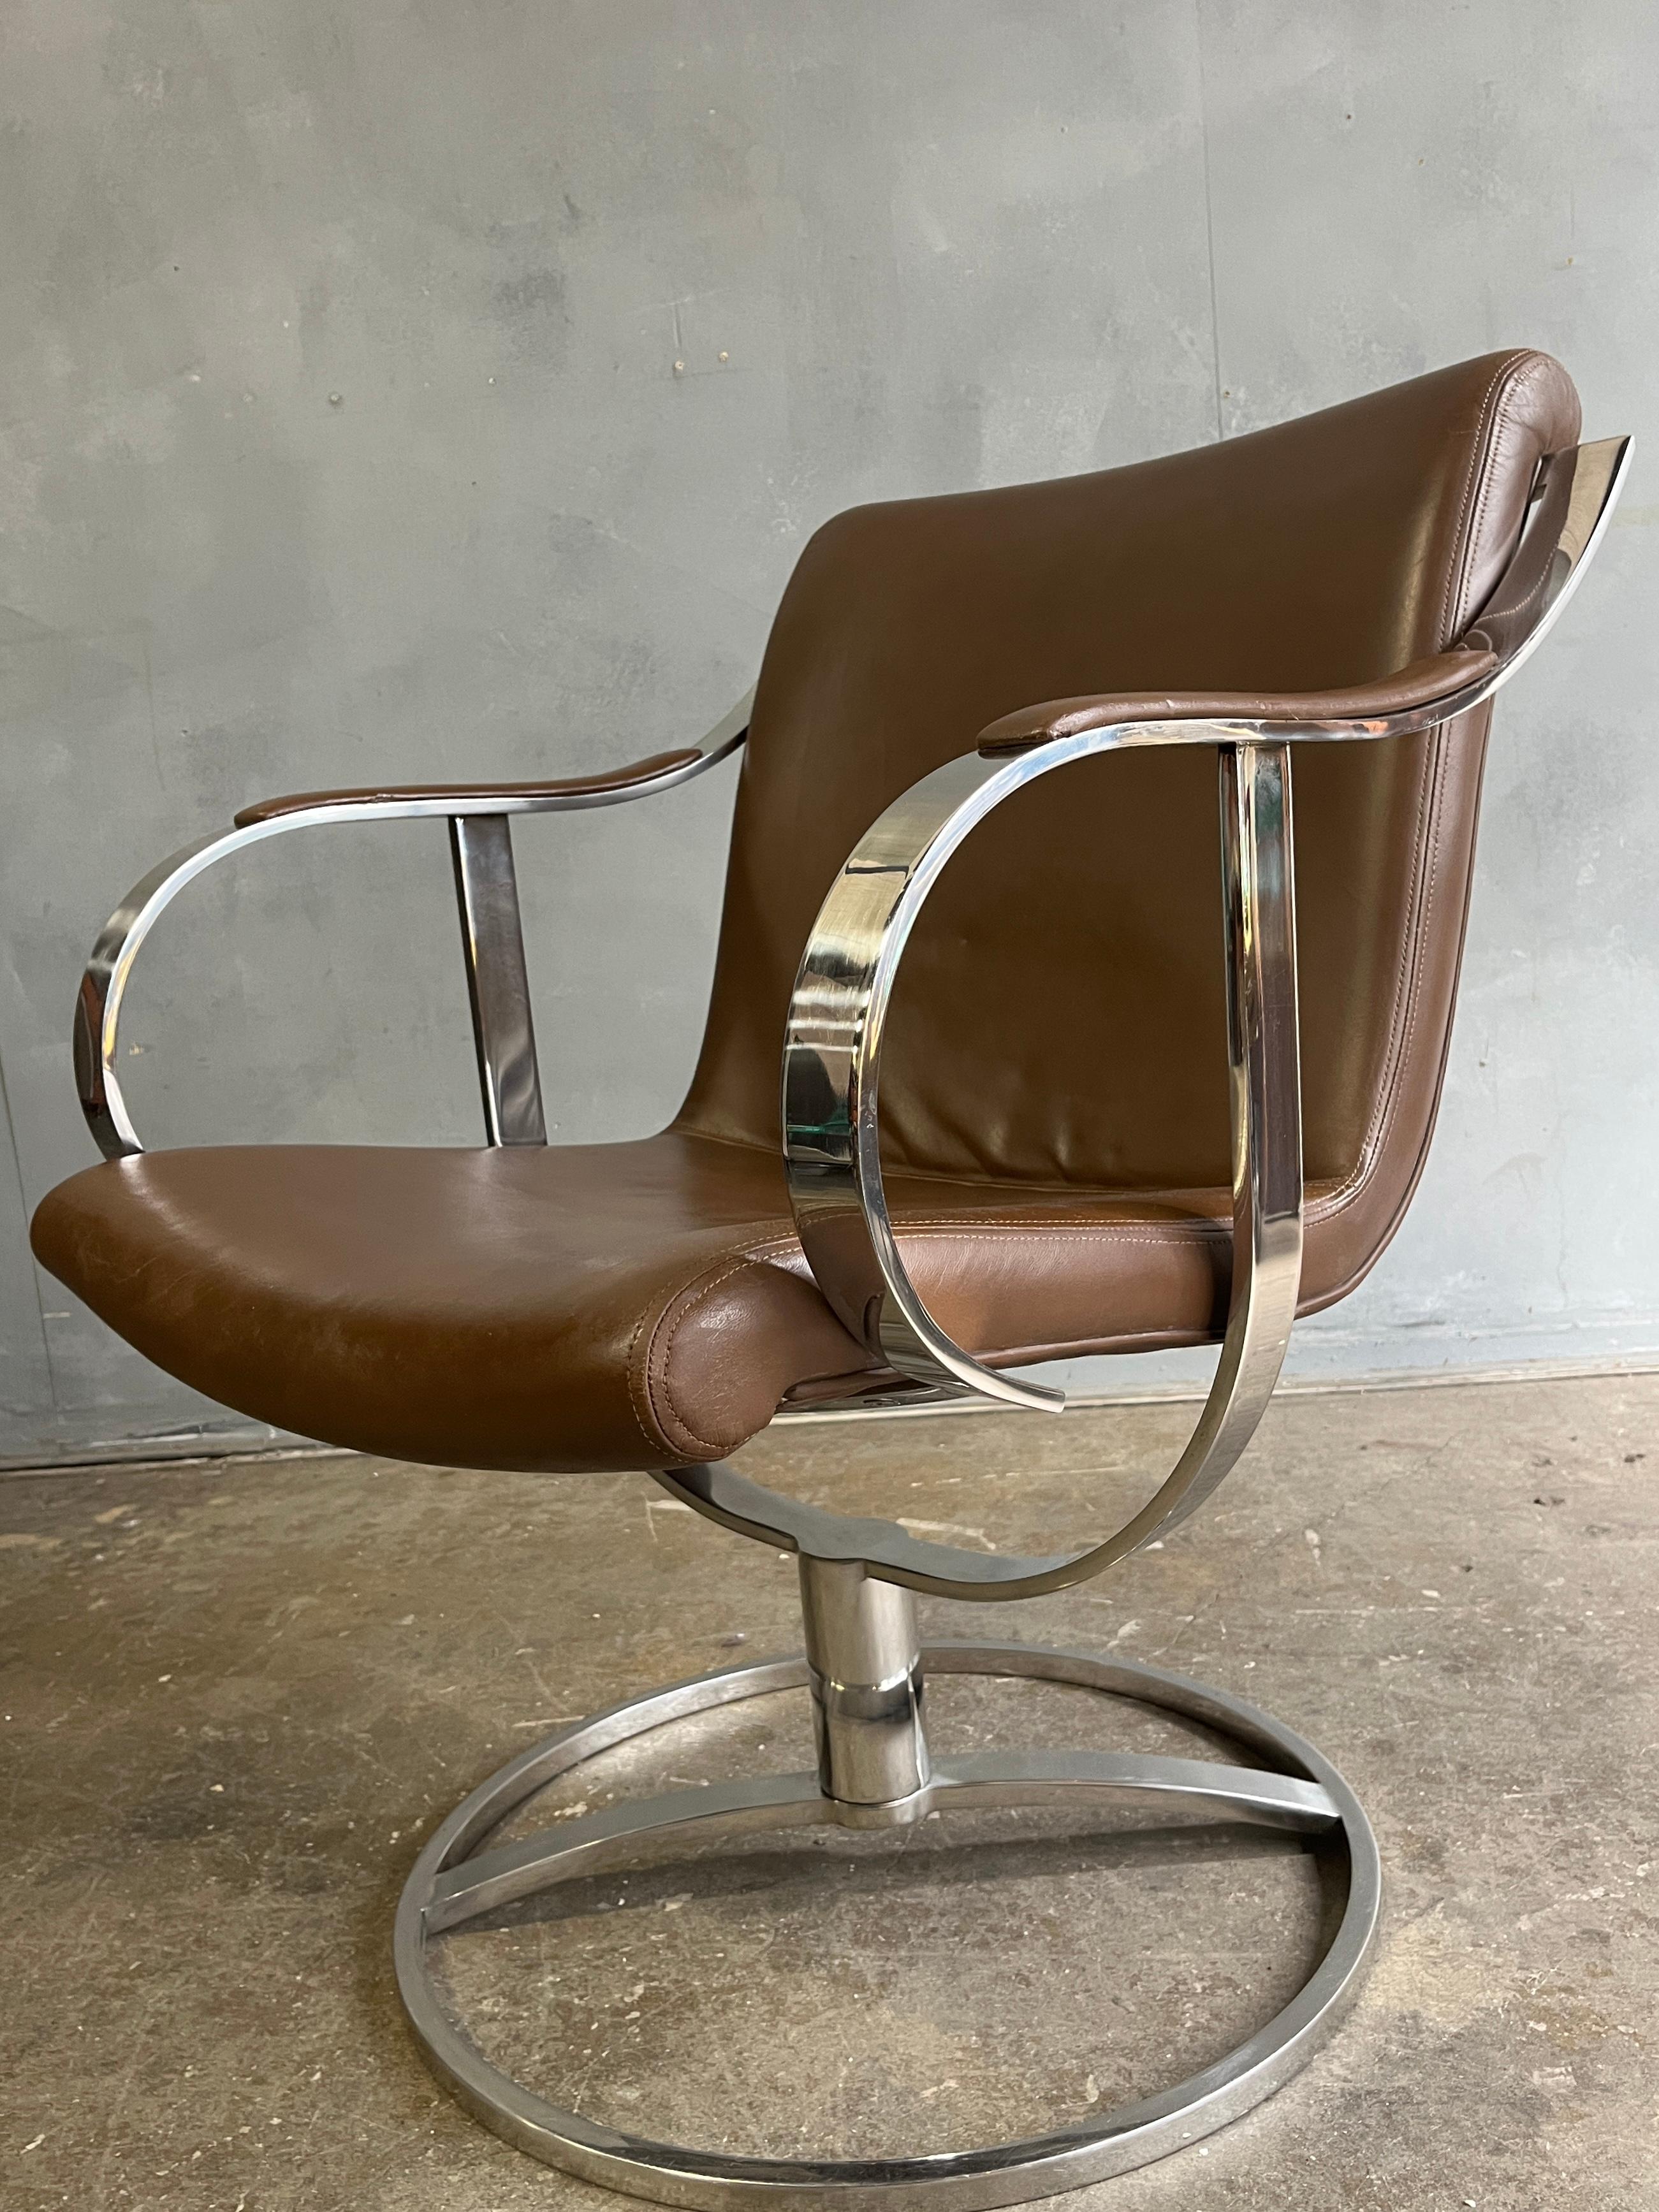 Gardner Leaver für Steelcase Sessel in sattelbraunem Leder. Chrom ist in gutem Zustand ohne Rost. Er hat genau den richtigen Winkel, um als Bürostuhl, Lesesessel oder sogar als Loungesessel verwendet zu werden. Lässt sich mühelos um 360 Grad drehen.